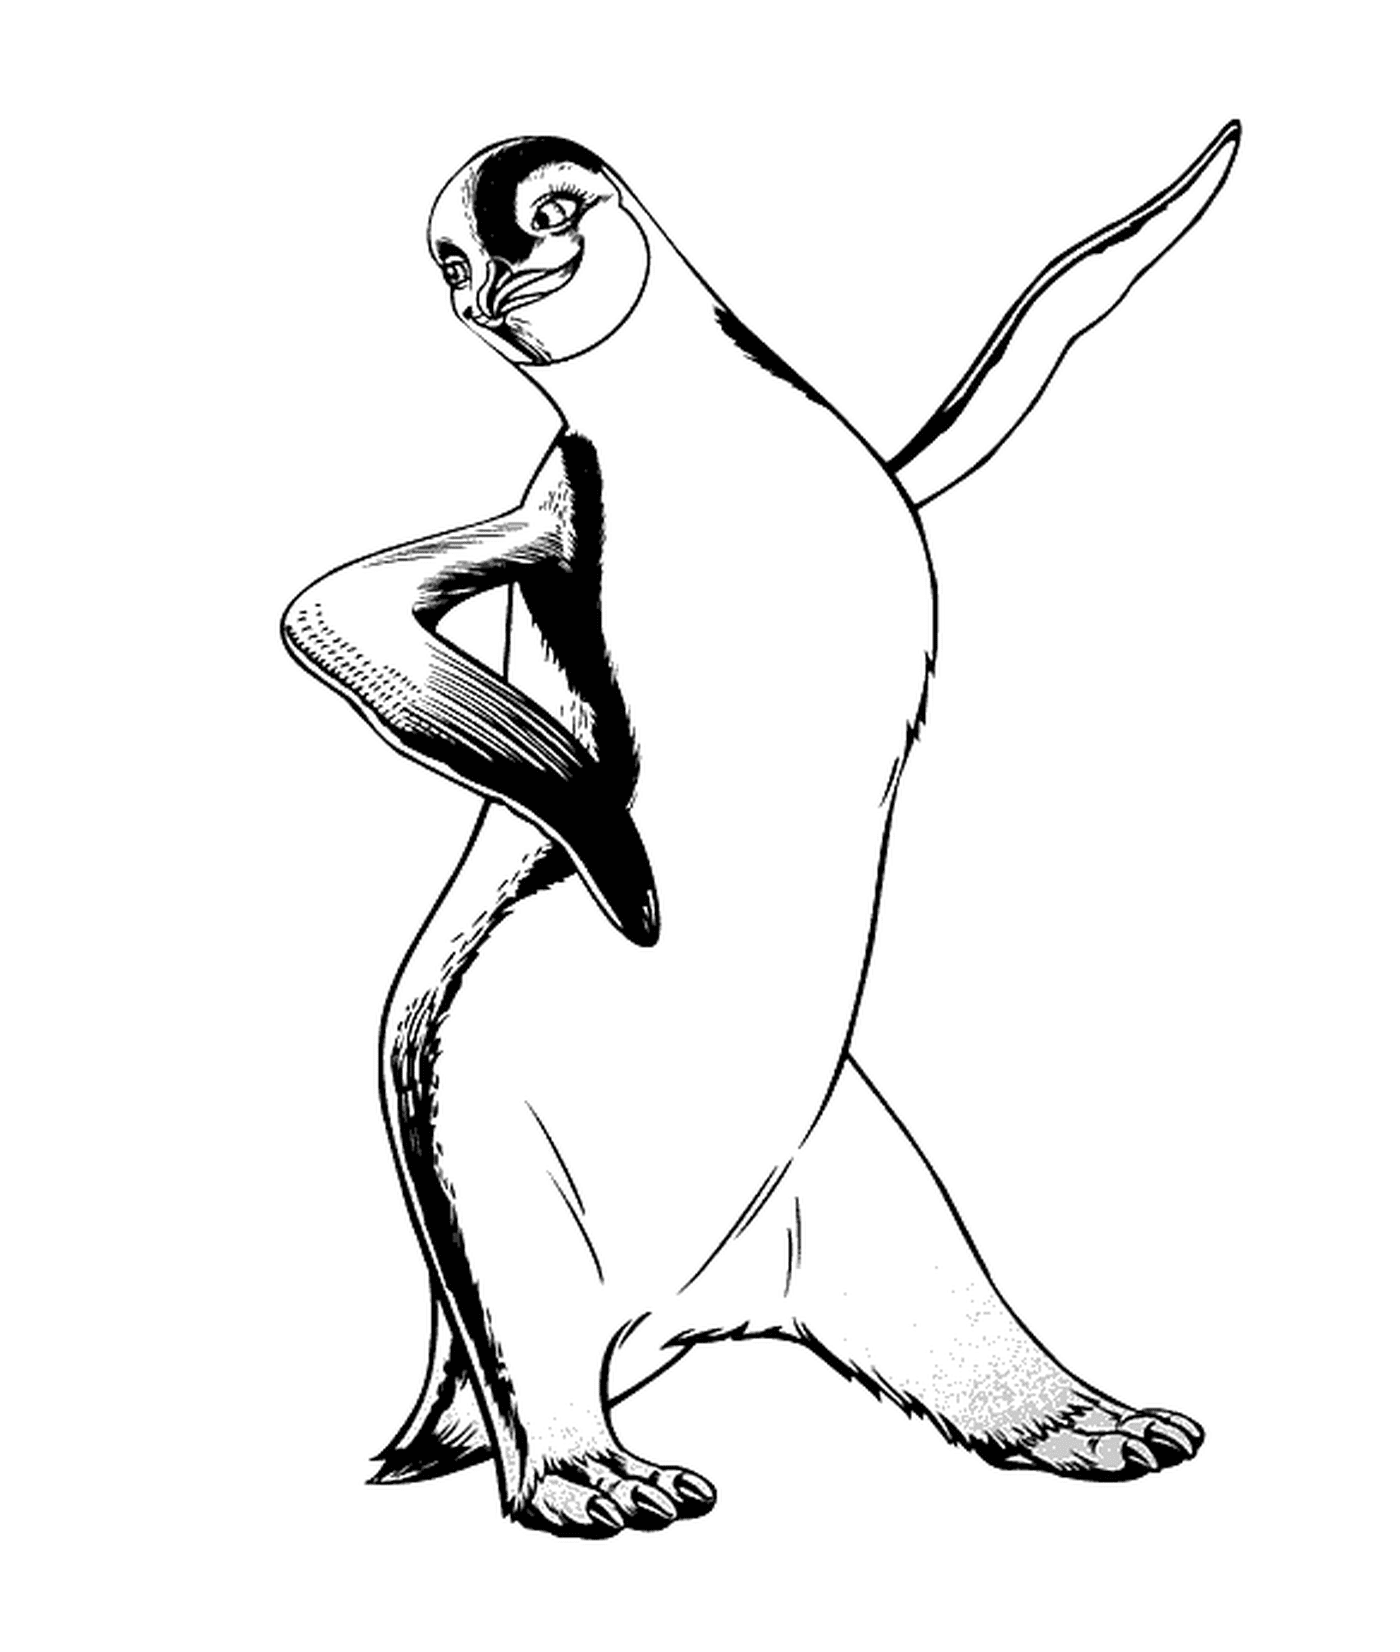  Pinguin tanzt mit Enthusiasmus 